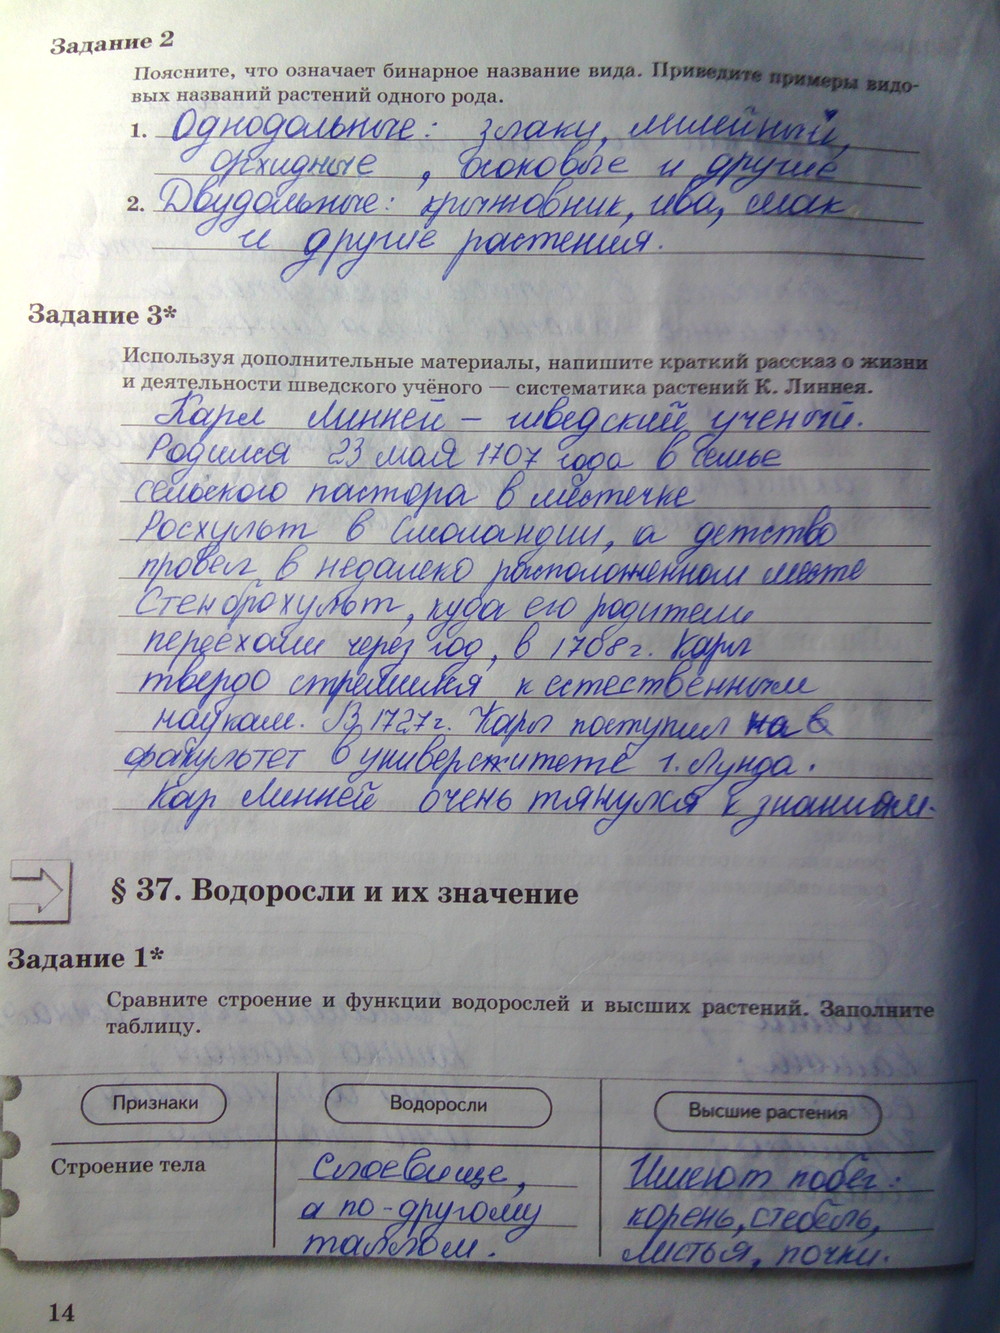 Страница (упражнение) 14 рабочей тетради. Страница 14 ГДЗ рабочая тетрадь по биологии 6 класс Пономарева